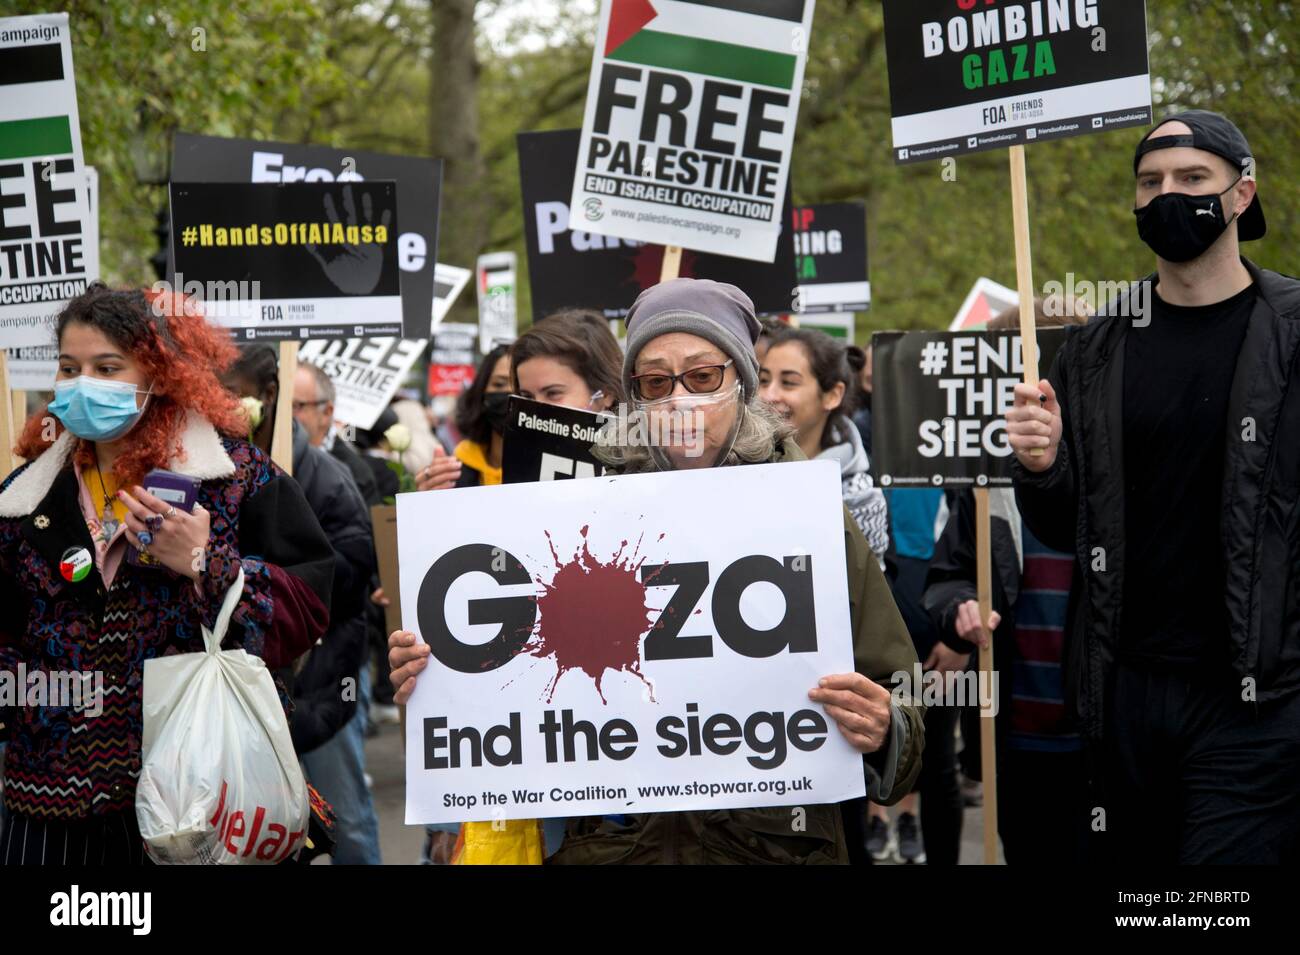 15 maggio 2021 solidarietà con la Palestina - una marcia a Londra in occasione dell'anniversario della Nakba (catastrofe), il giorno in cui più di 500 villaggi e il rimorchio Foto Stock